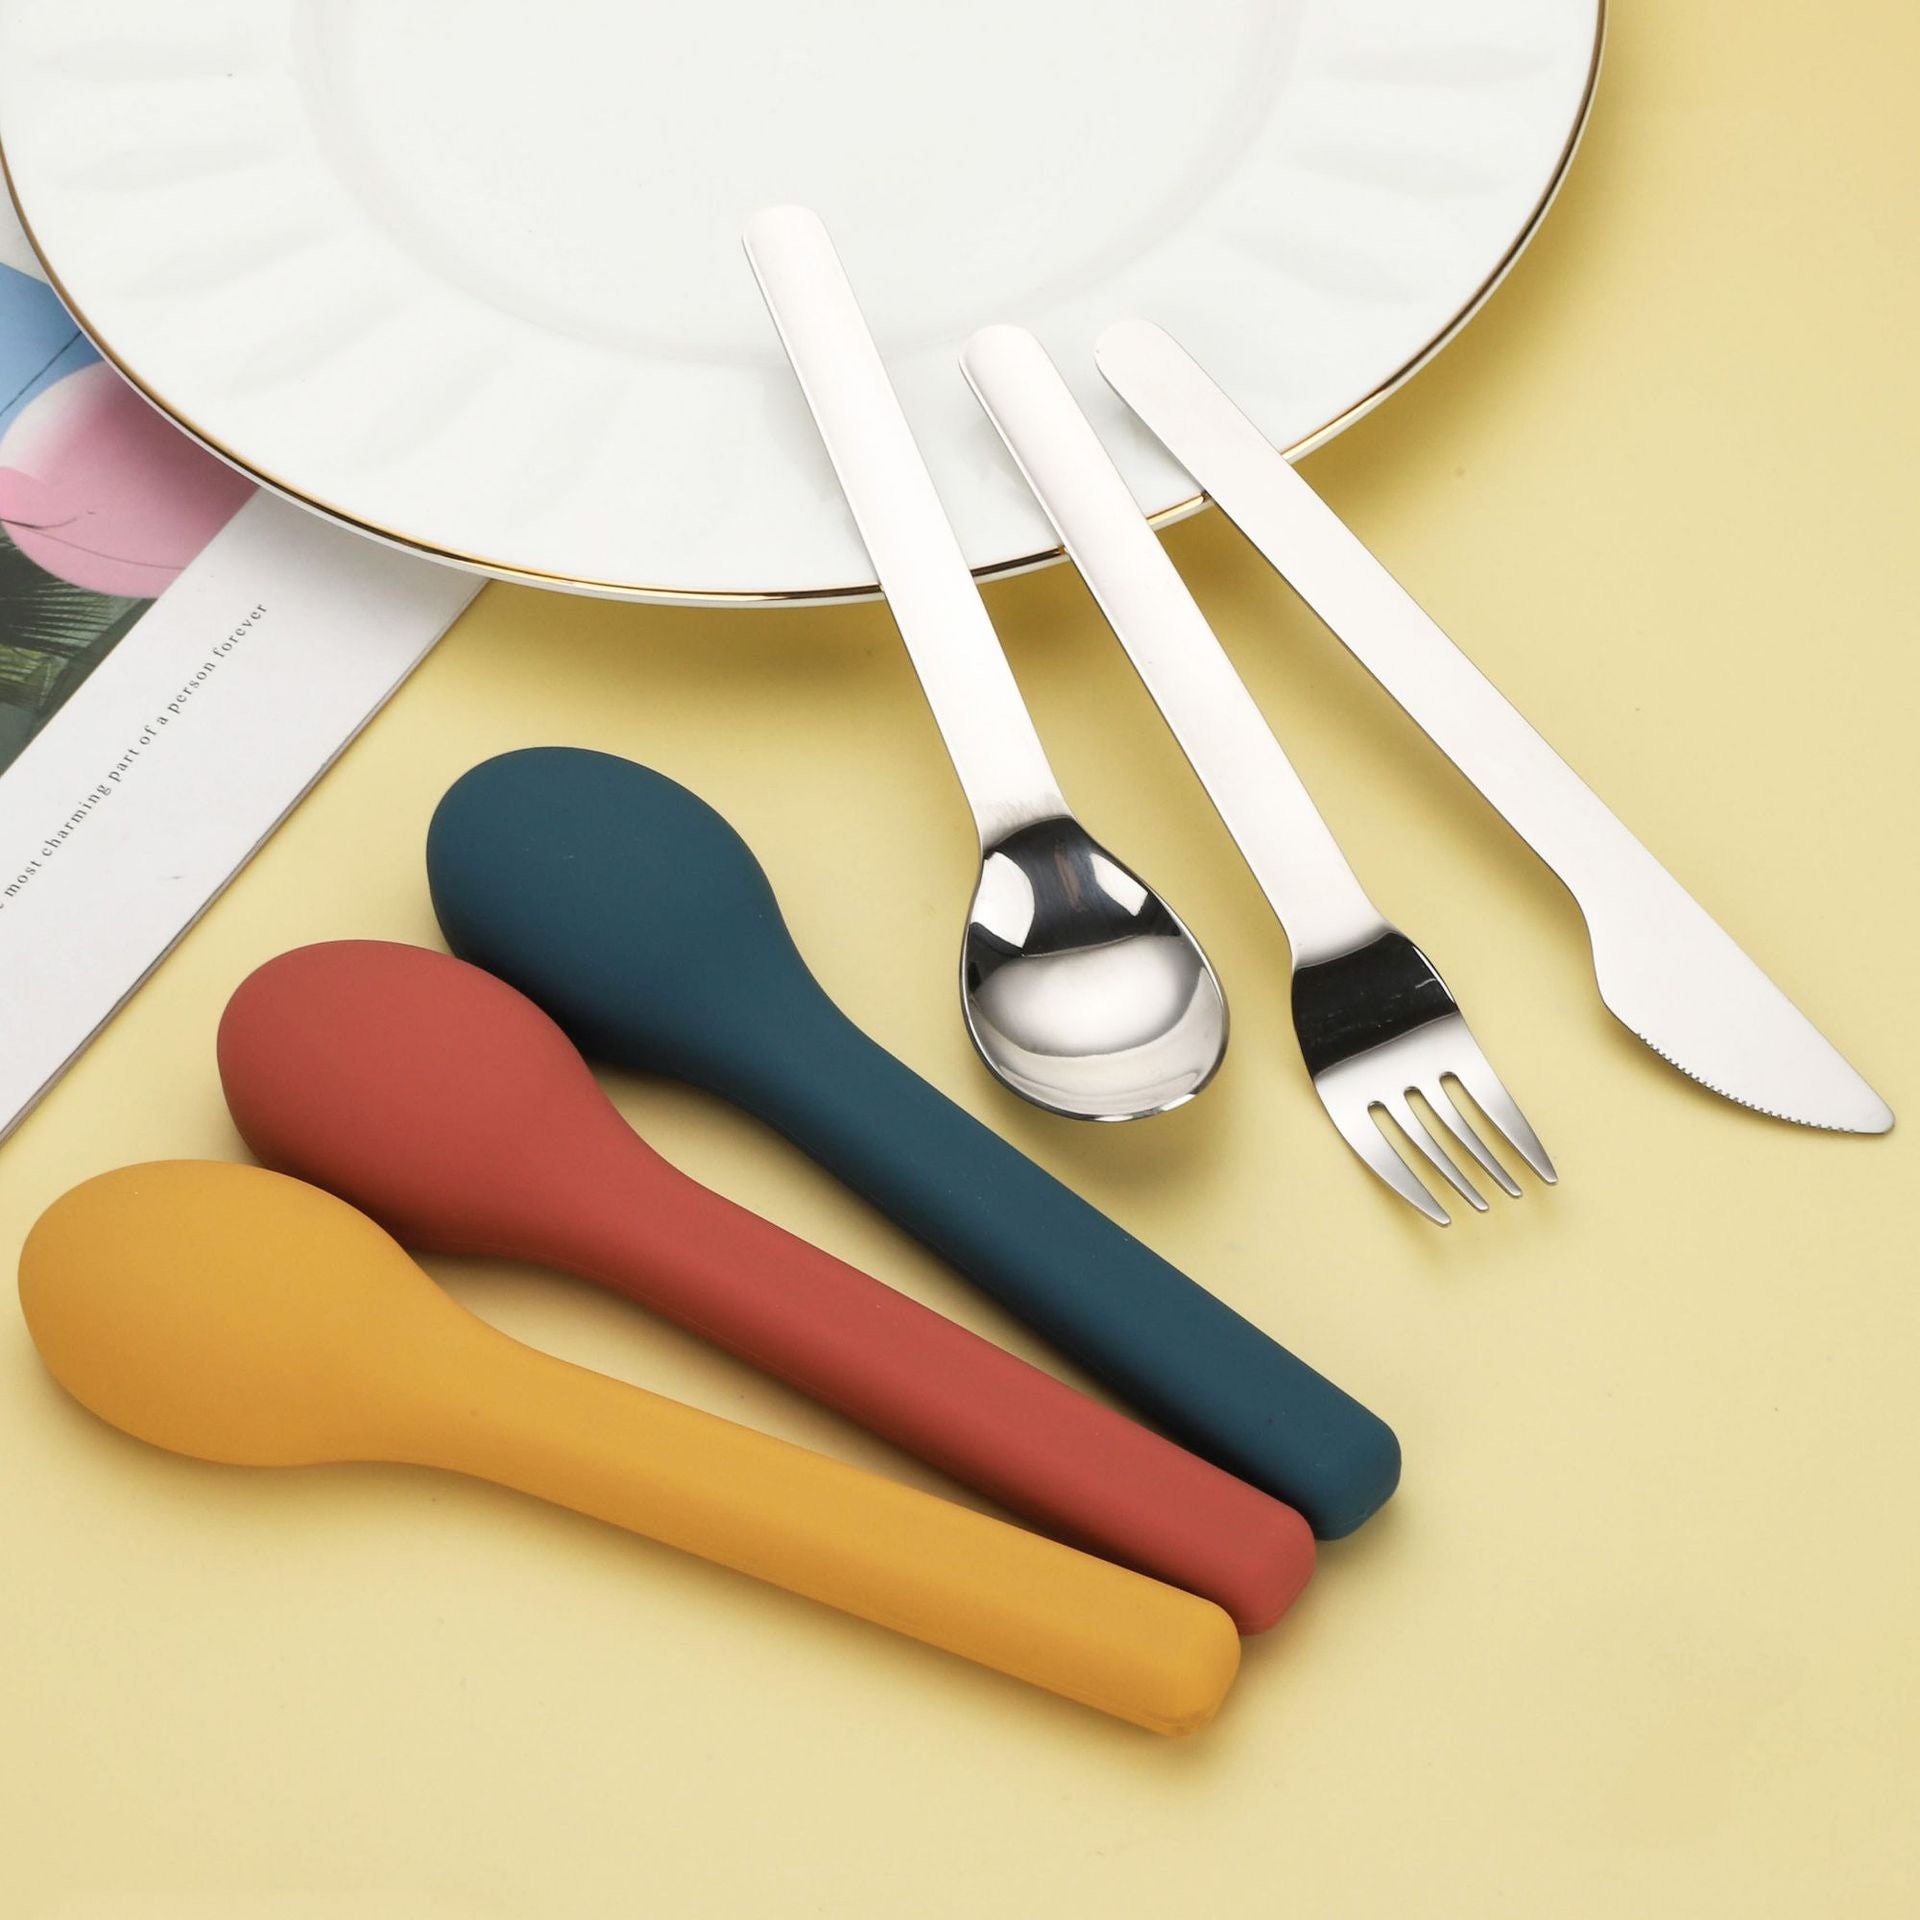 Final Cutlery Set 🍴+ 🥢 - Five Cove